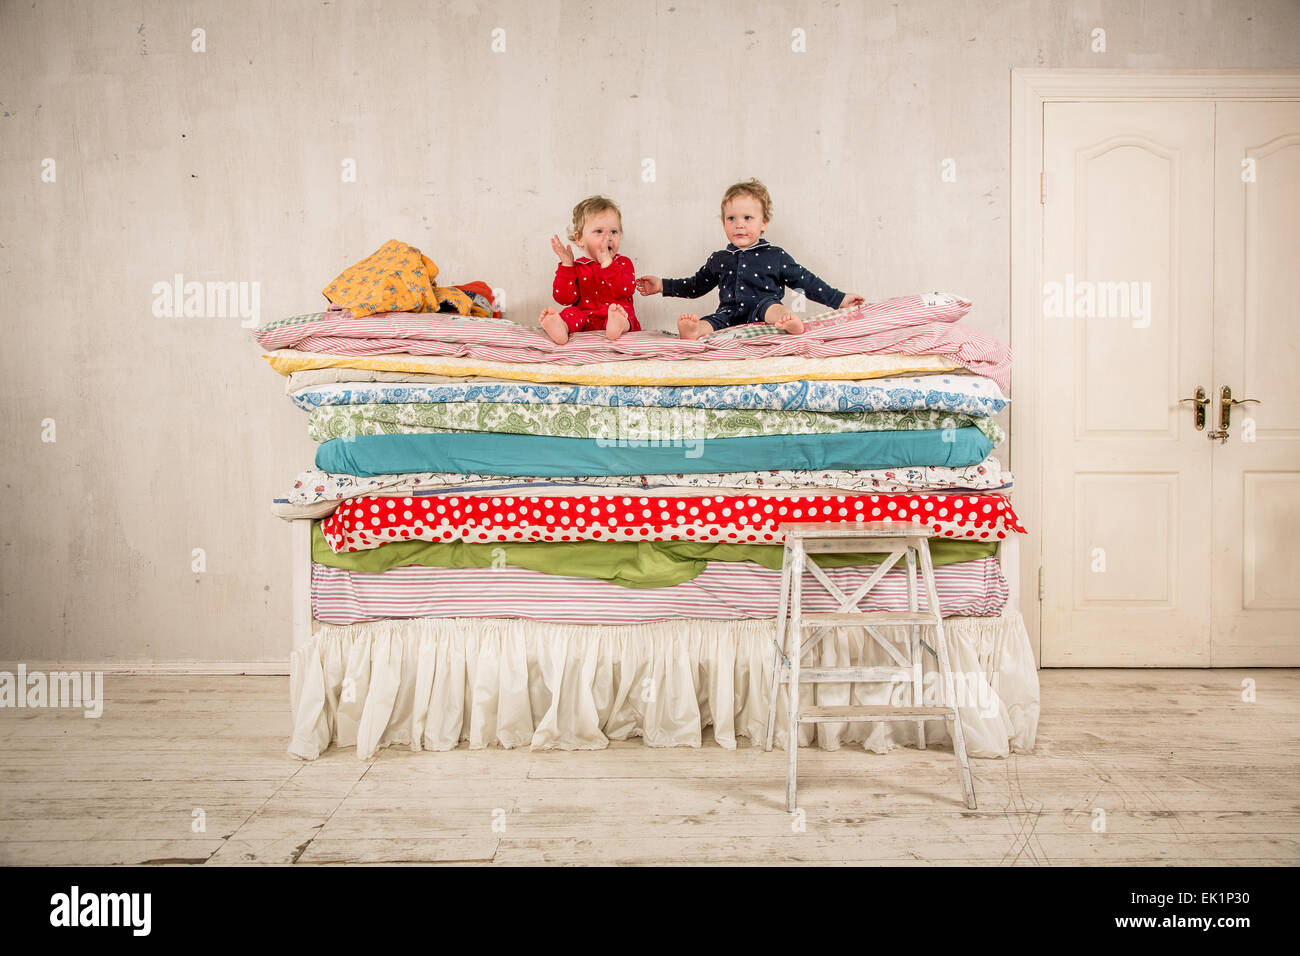 Kinder spielen am Bett - Prinzessin und die Erbse. Stockfoto